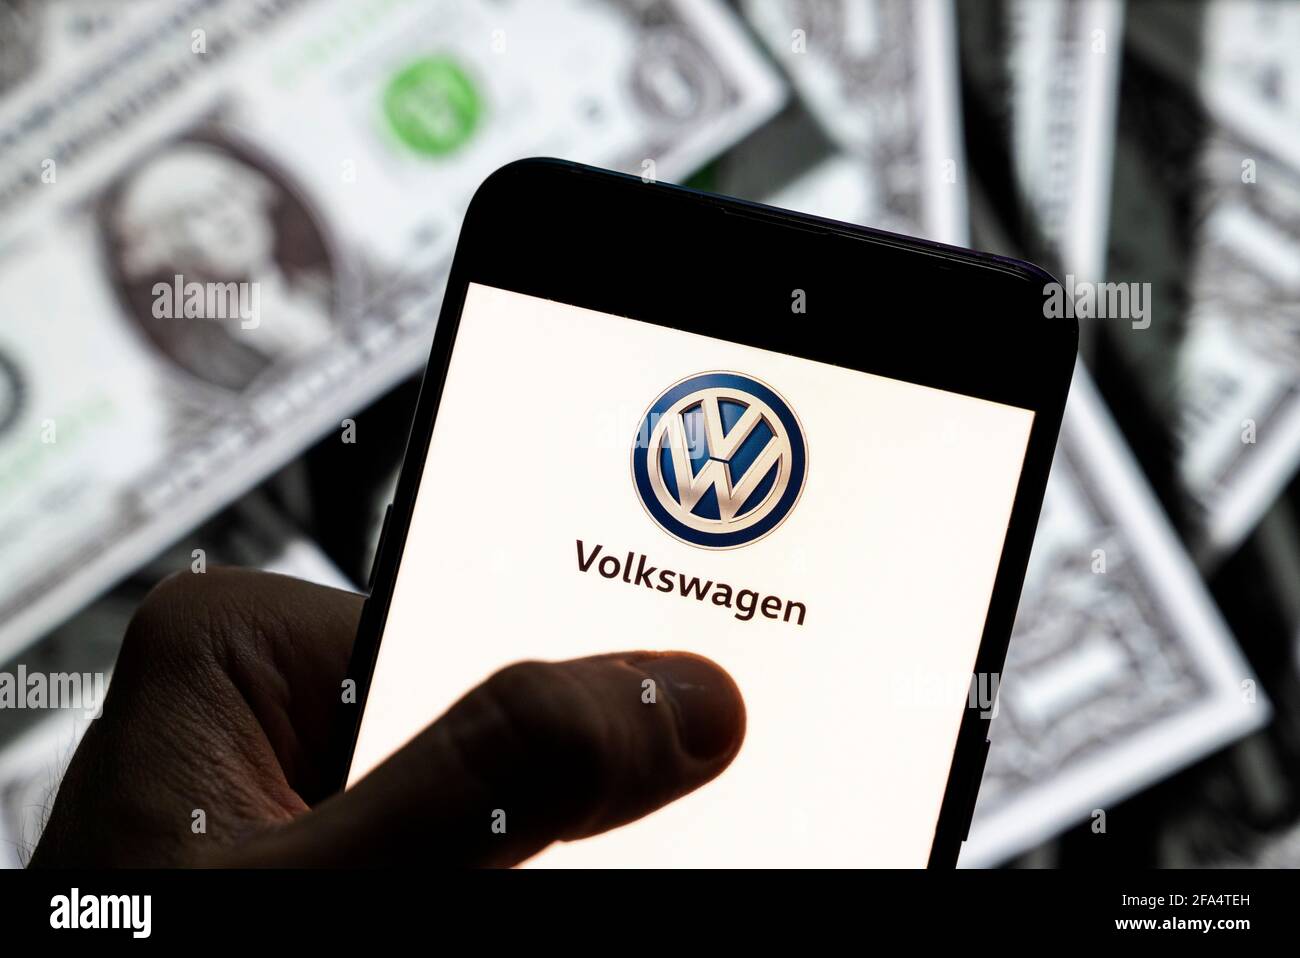 Dans cette illustration, le logo Volkswagen du constructeur automobile allemand vu sur un écran d'appareil mobile Android avec la devise de l'icône dollar des États-Unis, symbole d'icône $ en arrière-plan. Banque D'Images